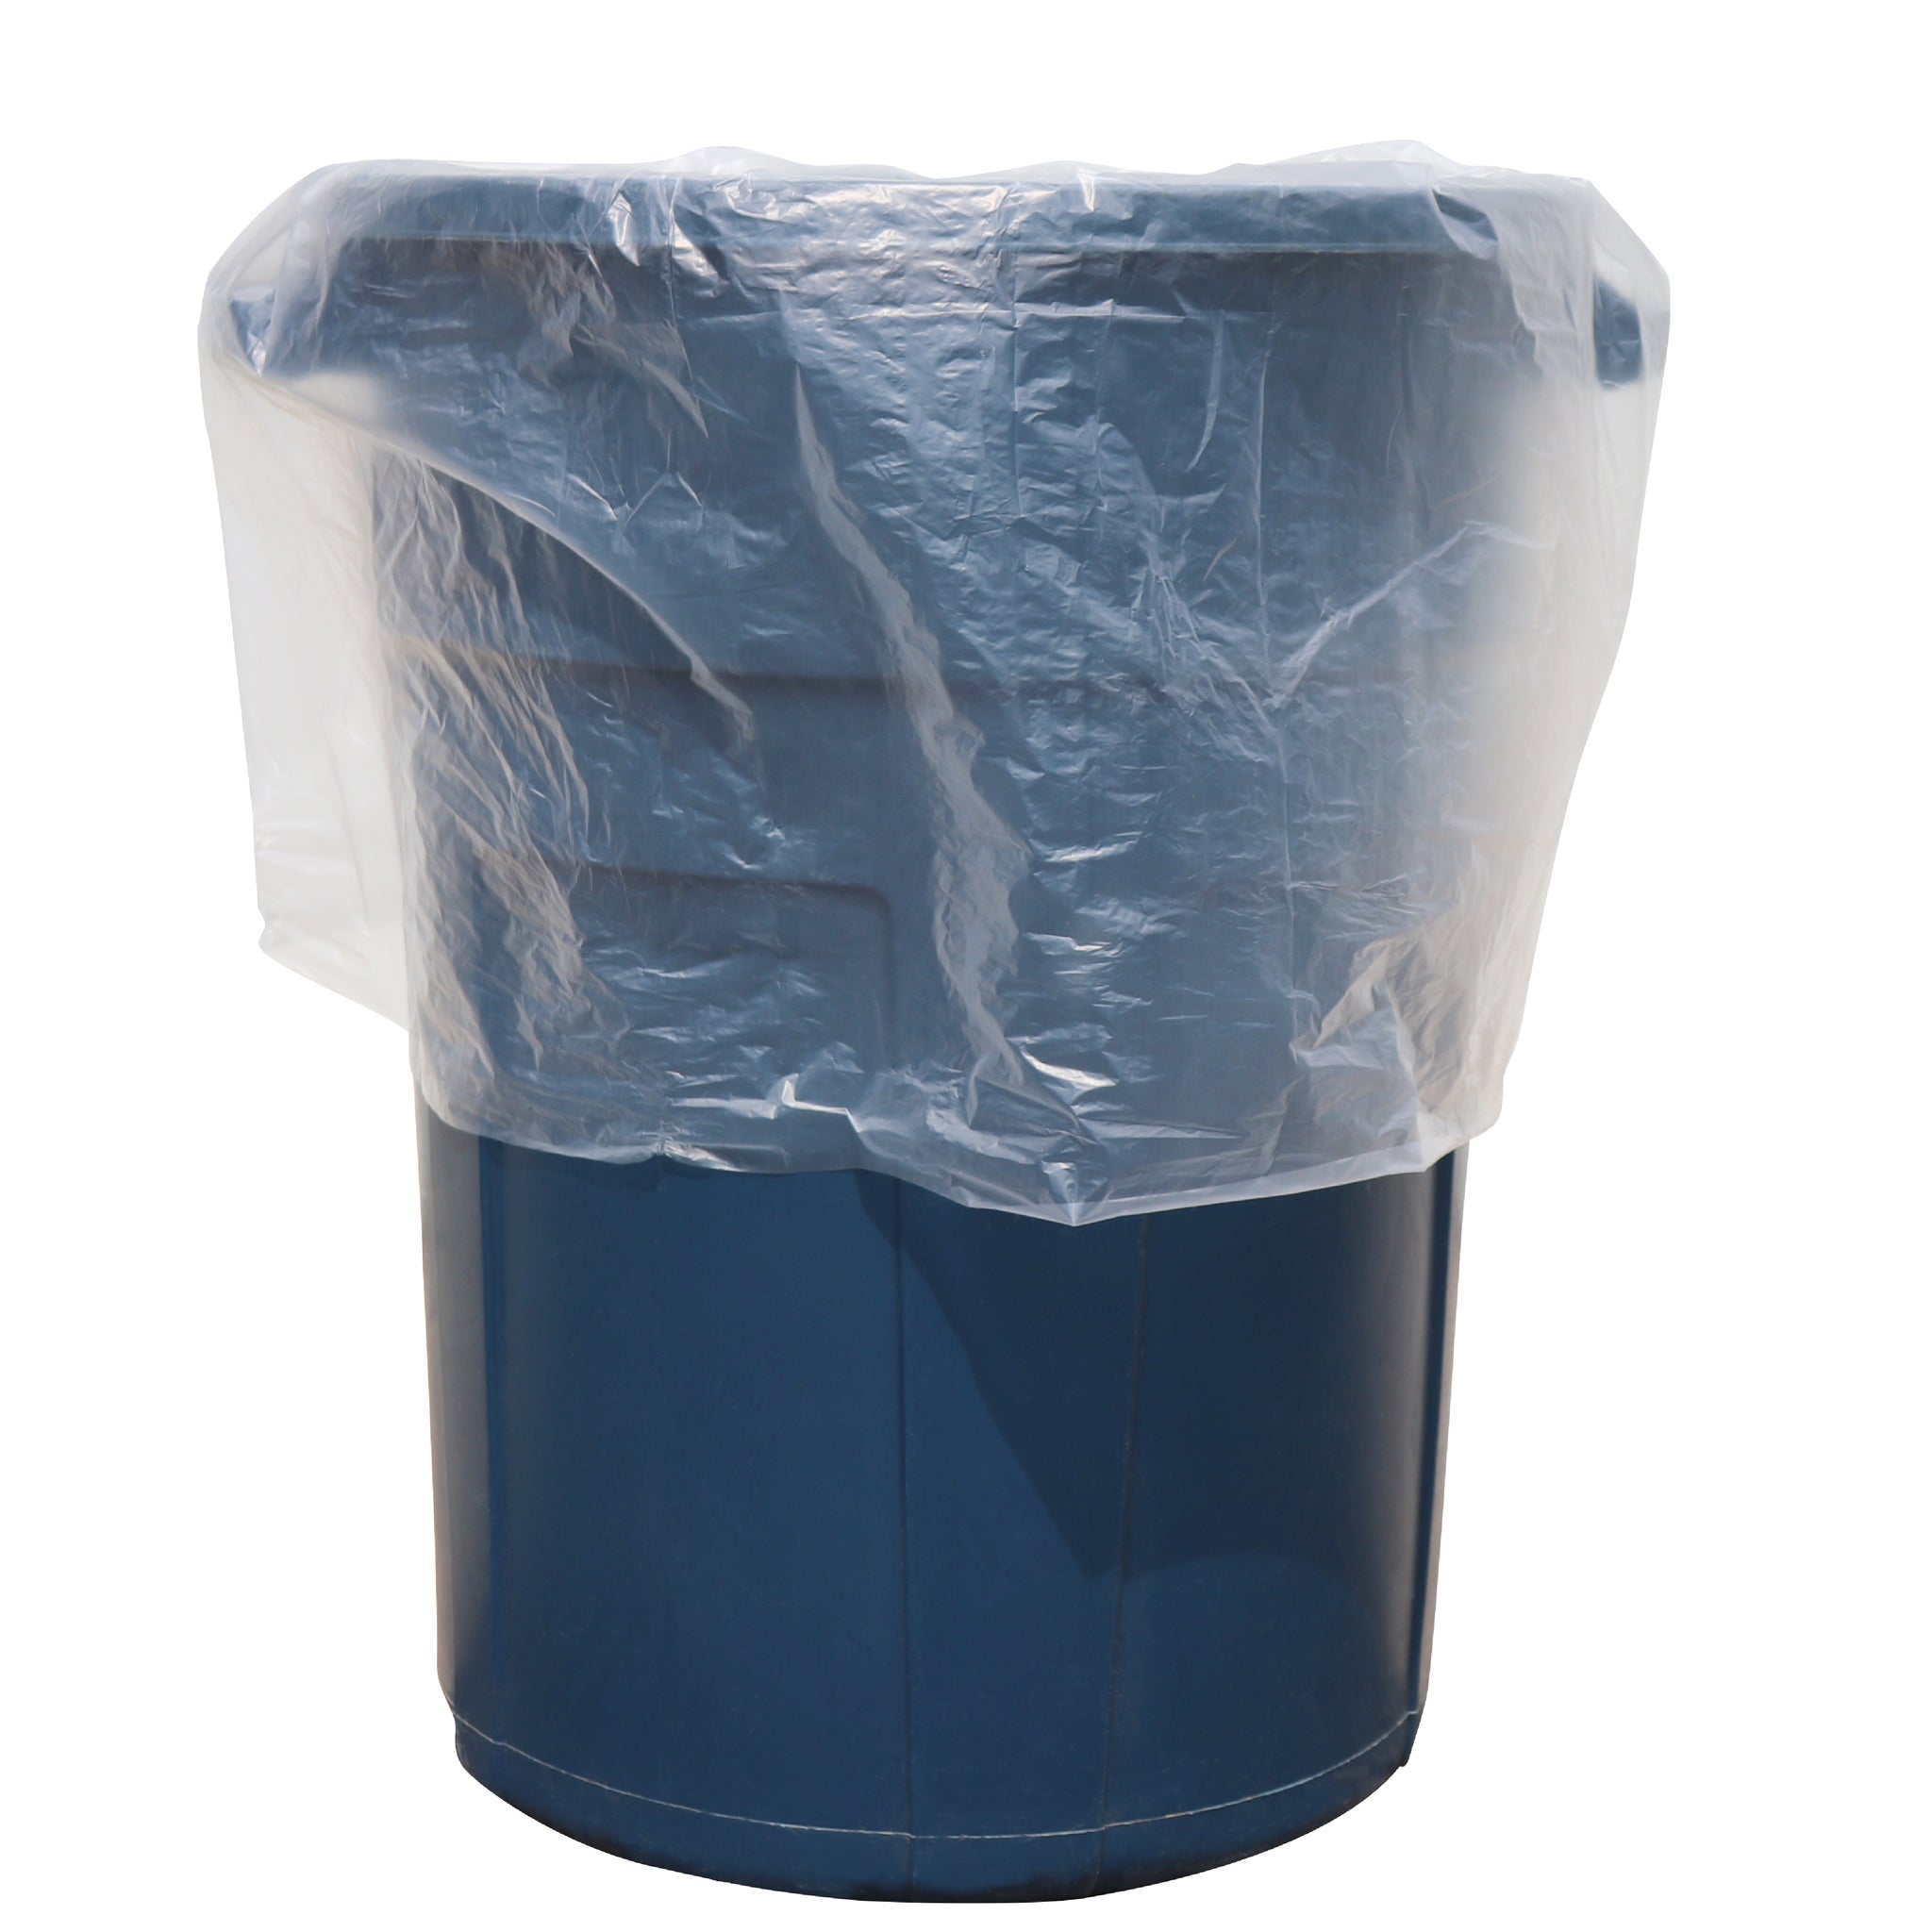 Trash Liner - LLDPE/HDPE Biodegradable* Star Sealed Bag 38